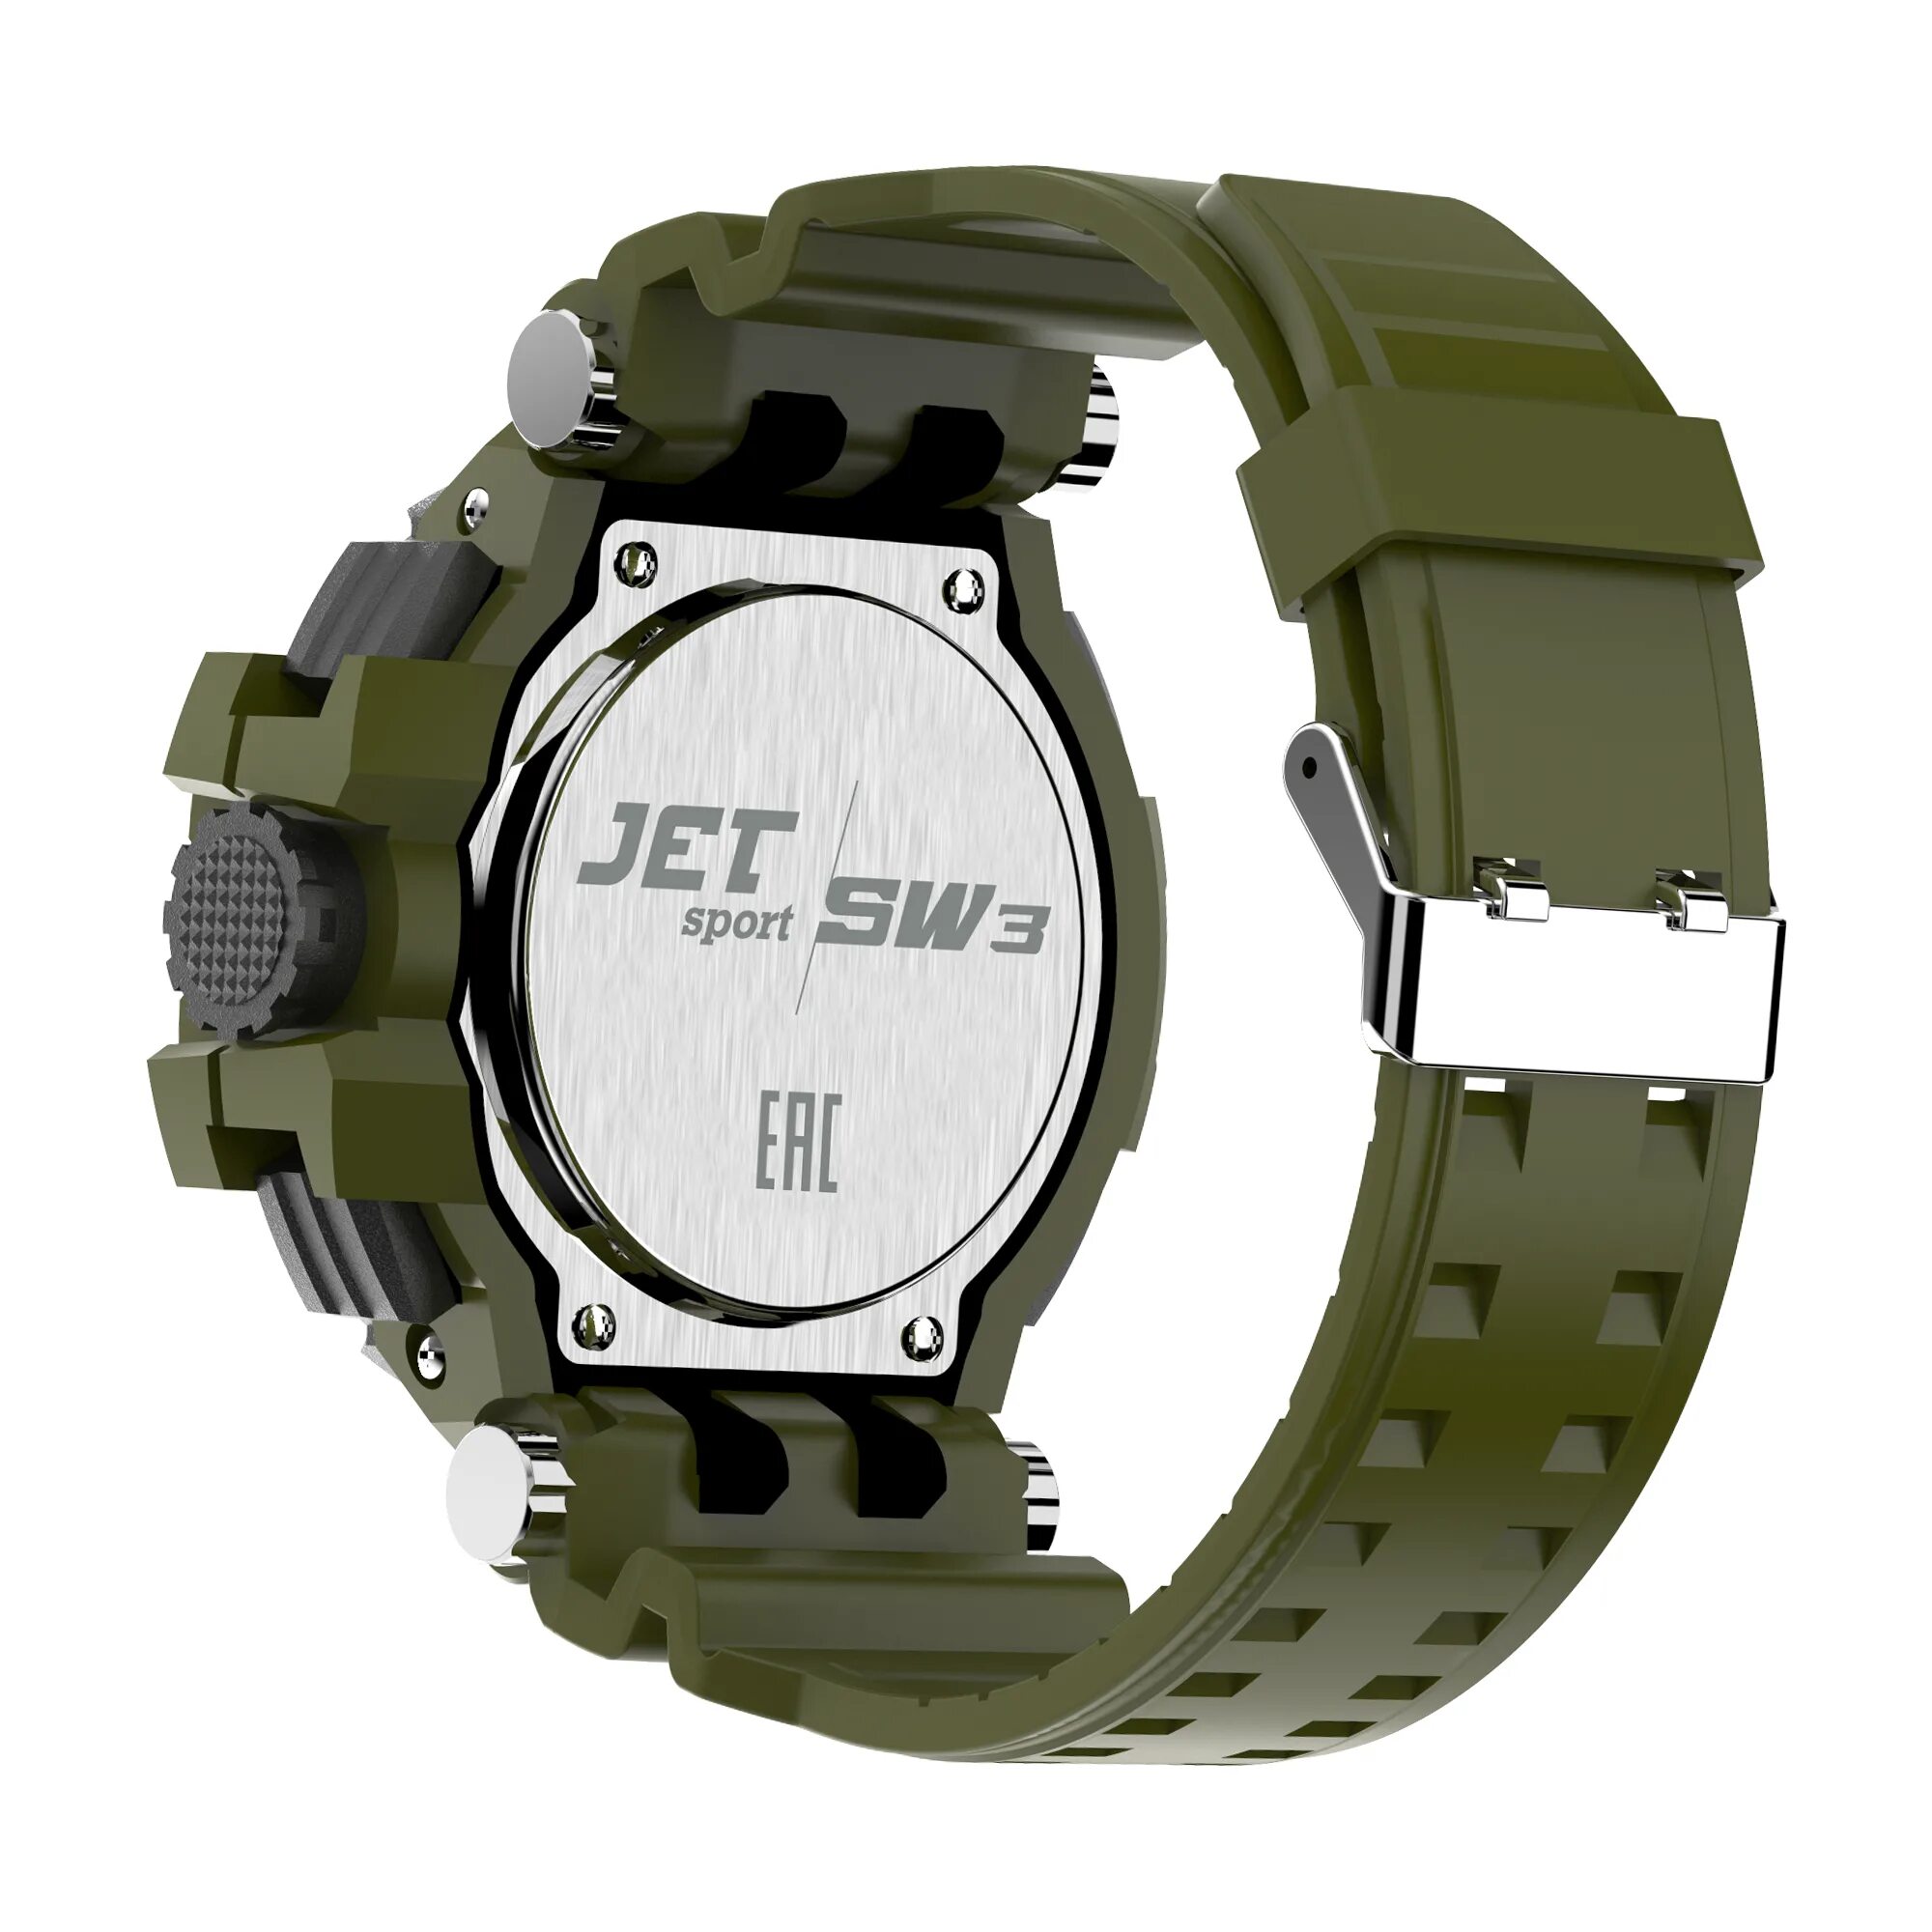 Sport sw 1. Jet Sport sw3 ремешок. Часы Jet Sport SW-3. Jet Sport SW-1. Смарт-часы Jet Sport sw3.